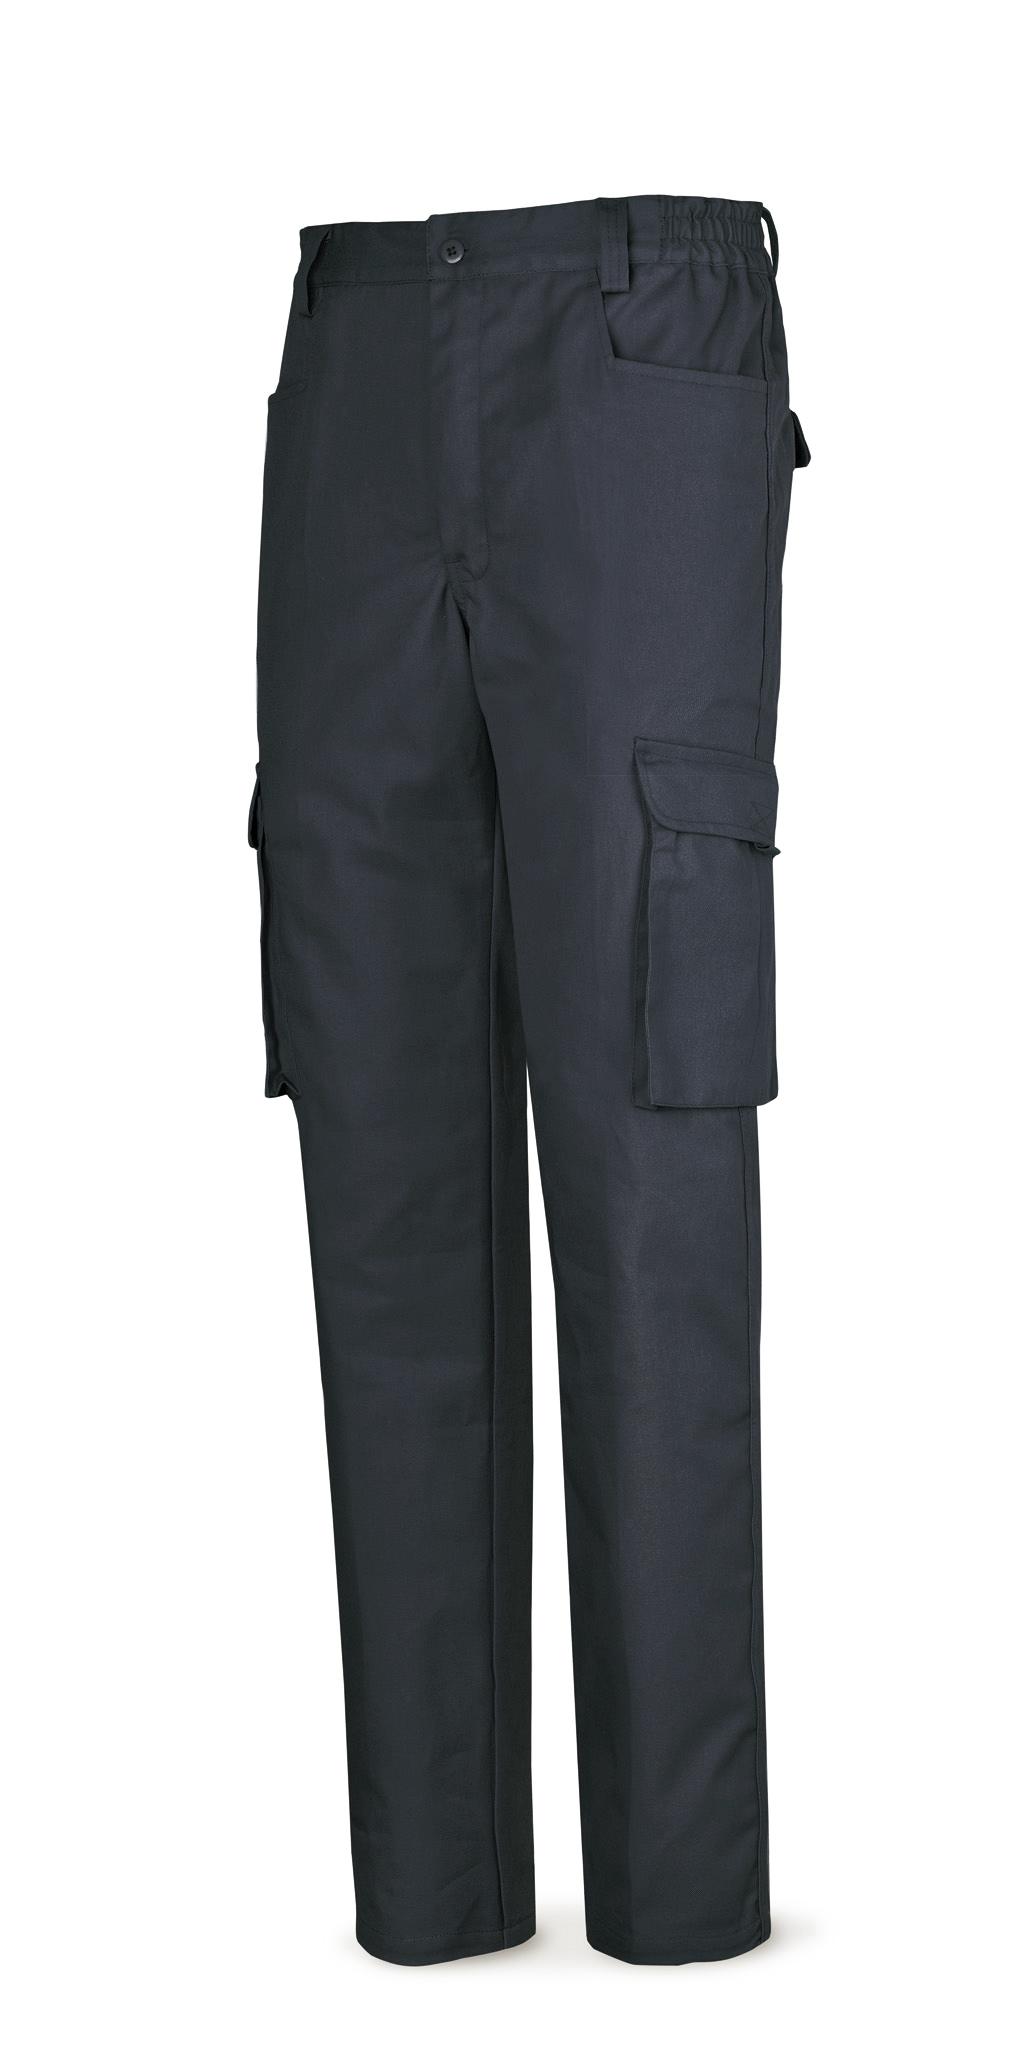 Pantalon algodon 1ª a. marino 38